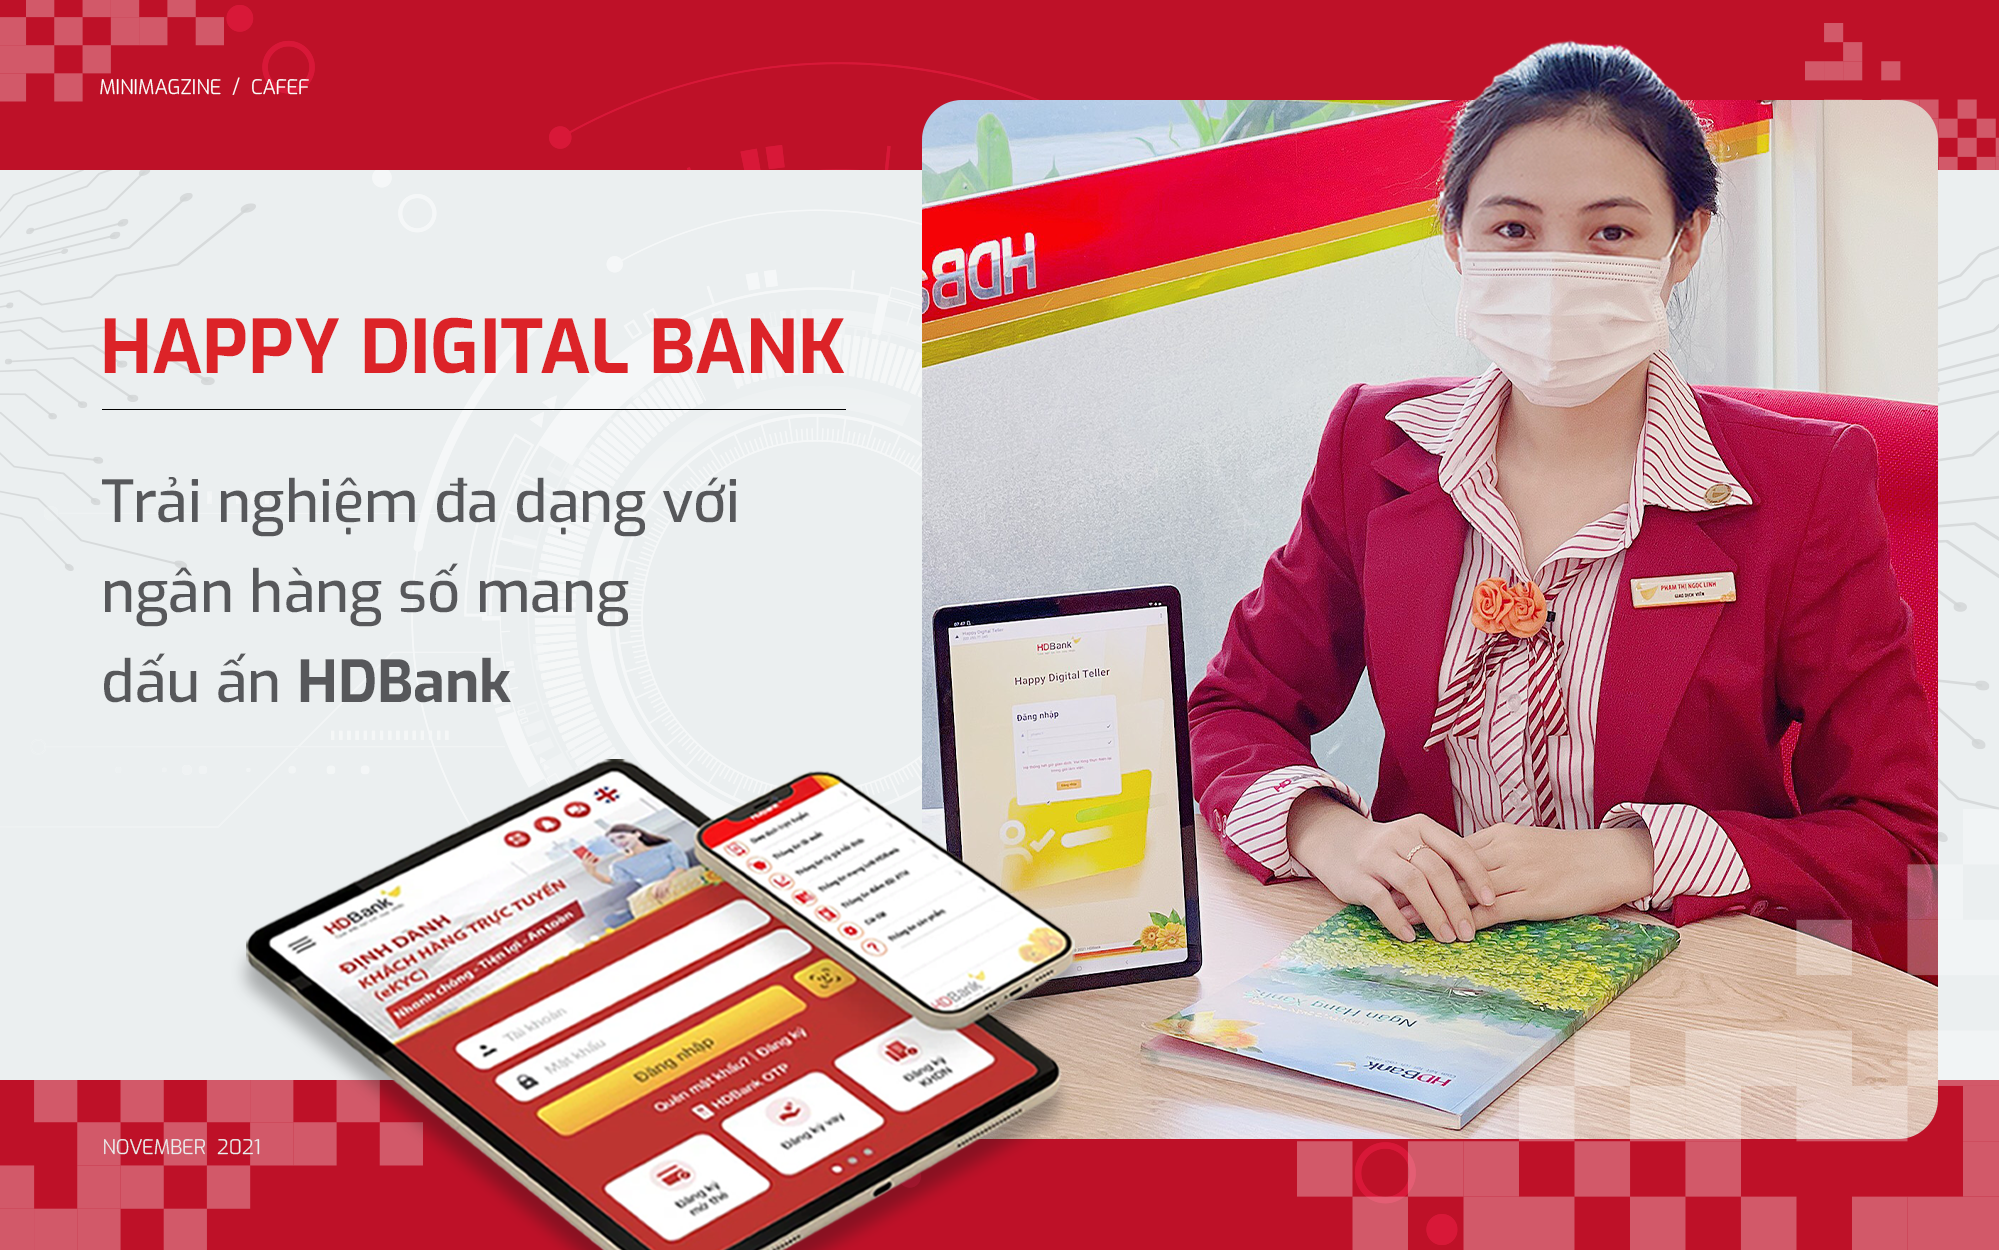 Happy Digital Bank - Trải nghiệm đa dạng với ngân hàng số mang dấu ấn HDBank